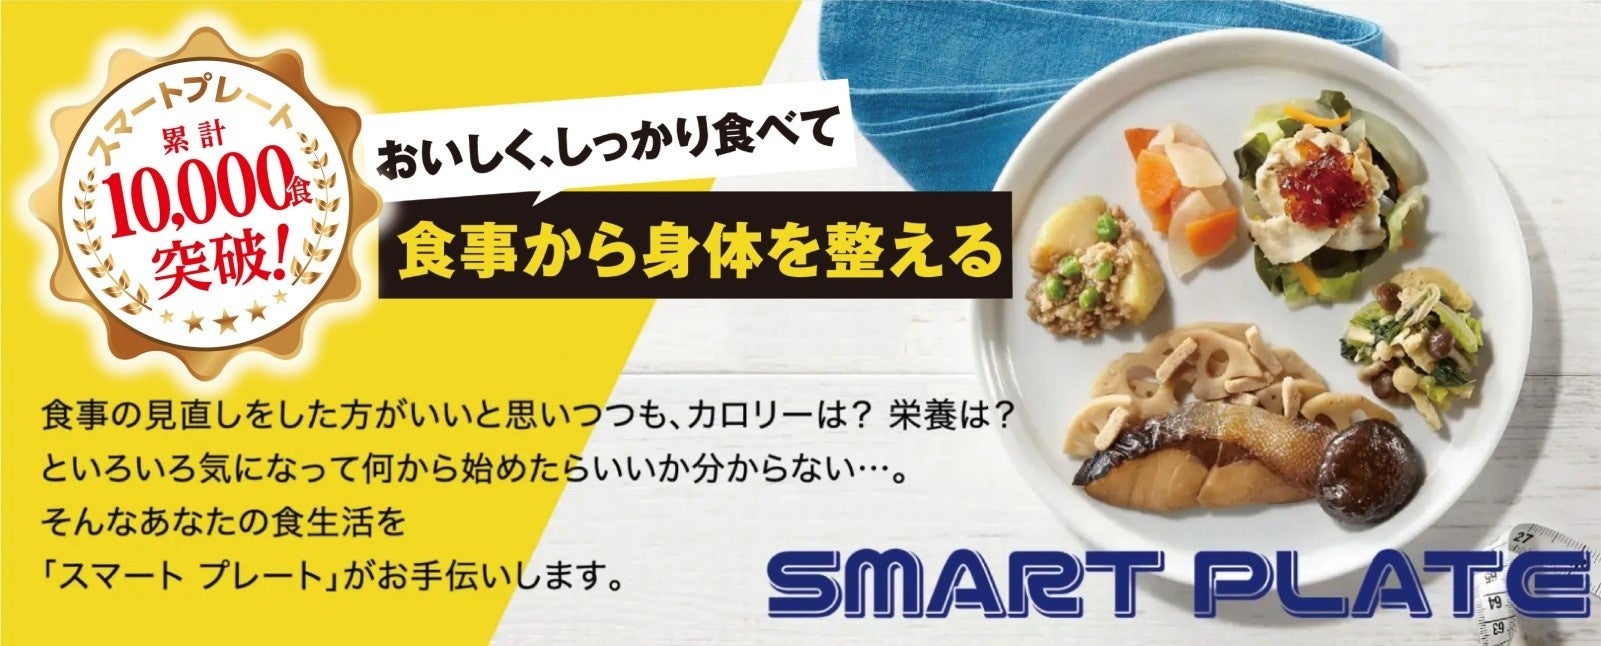 【全国より選び抜かれた商品が羽田空港に登場】”日本の食文化を未来へ”というコンセプトで日本の食文化の魅力を伝える「ジャパン・テロワールプロジェクト」POP UPを開催中。